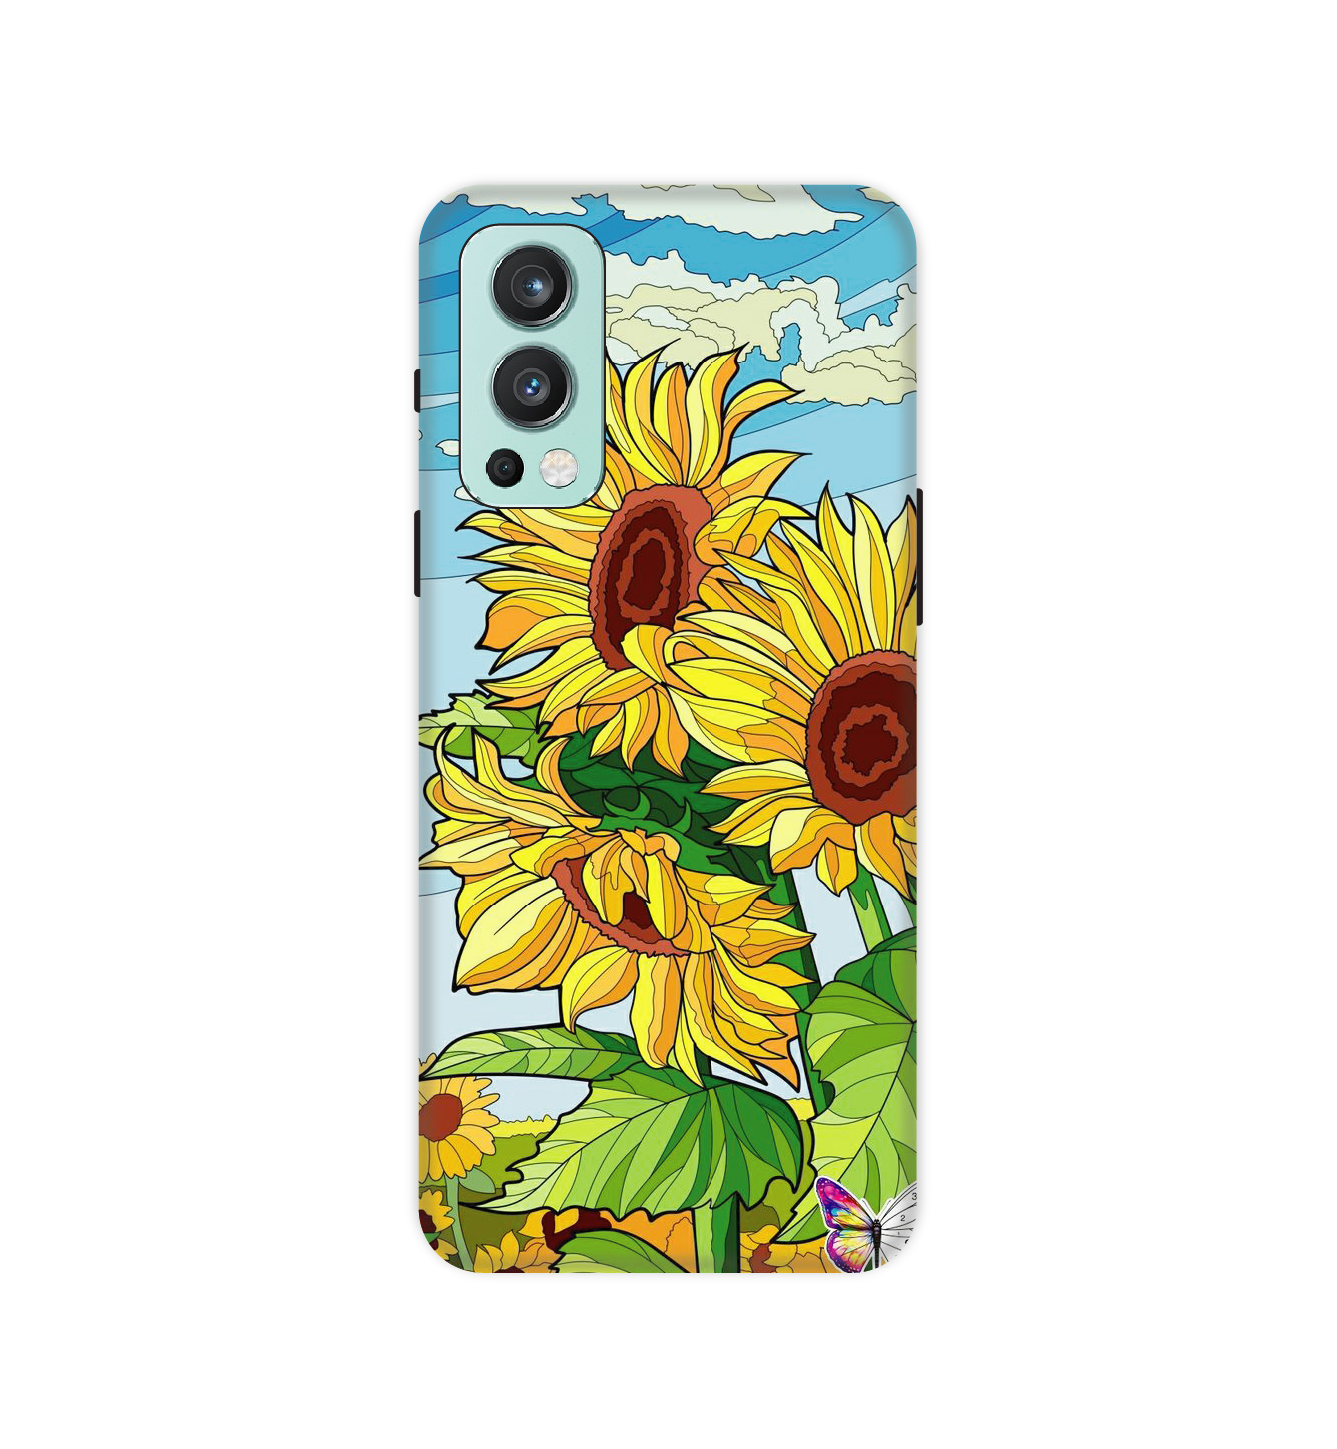 Sunflower -  Hard Cases For One Plus Models